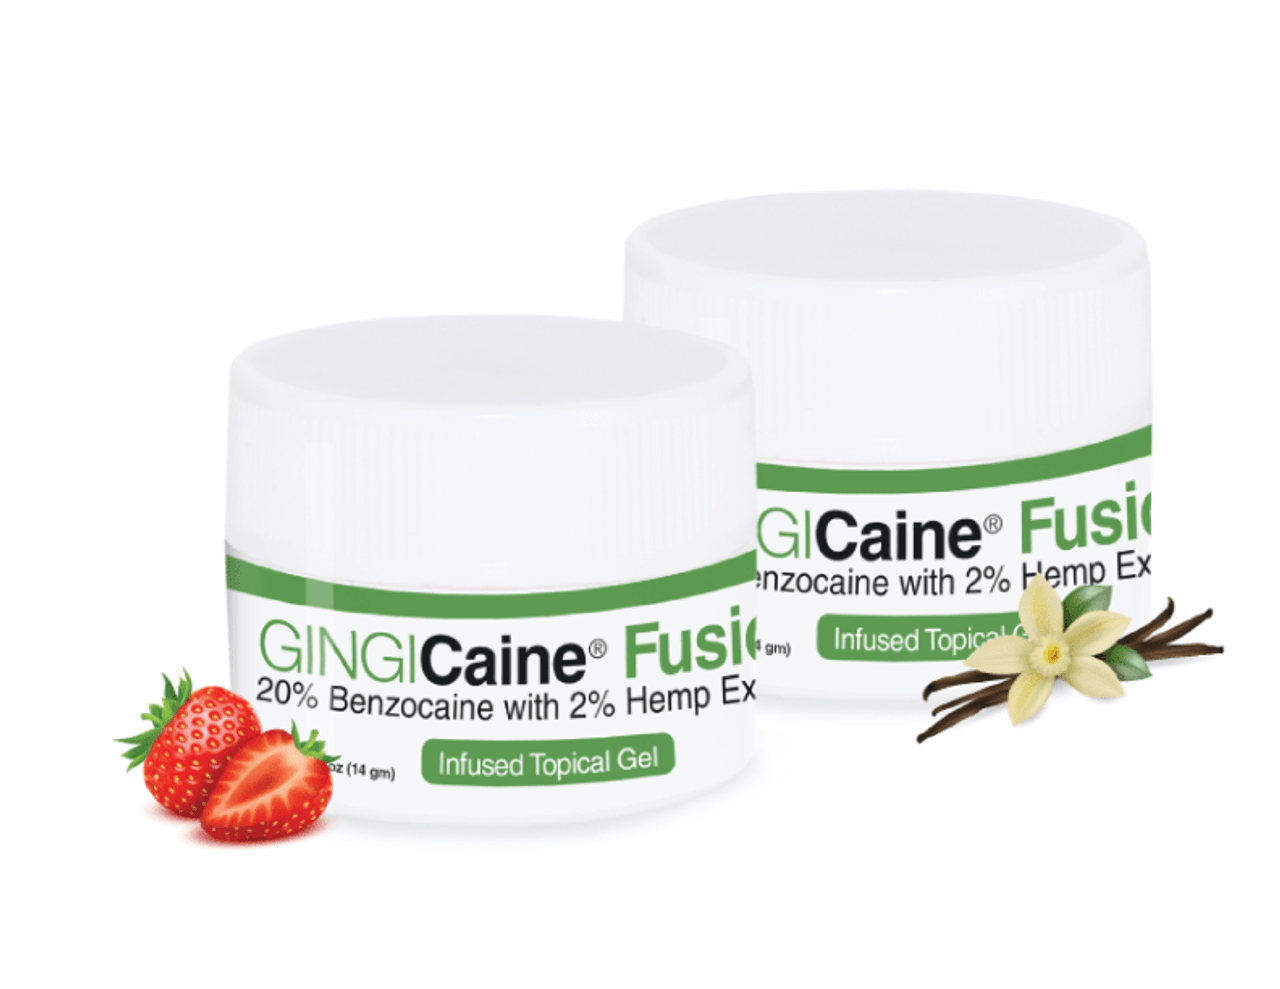 Gingi-Pak GINGICaine Topical Anesthetics, Fusion Strawberry, 2% Hemp Extract, 0.5 oz (14 gm) Bottle